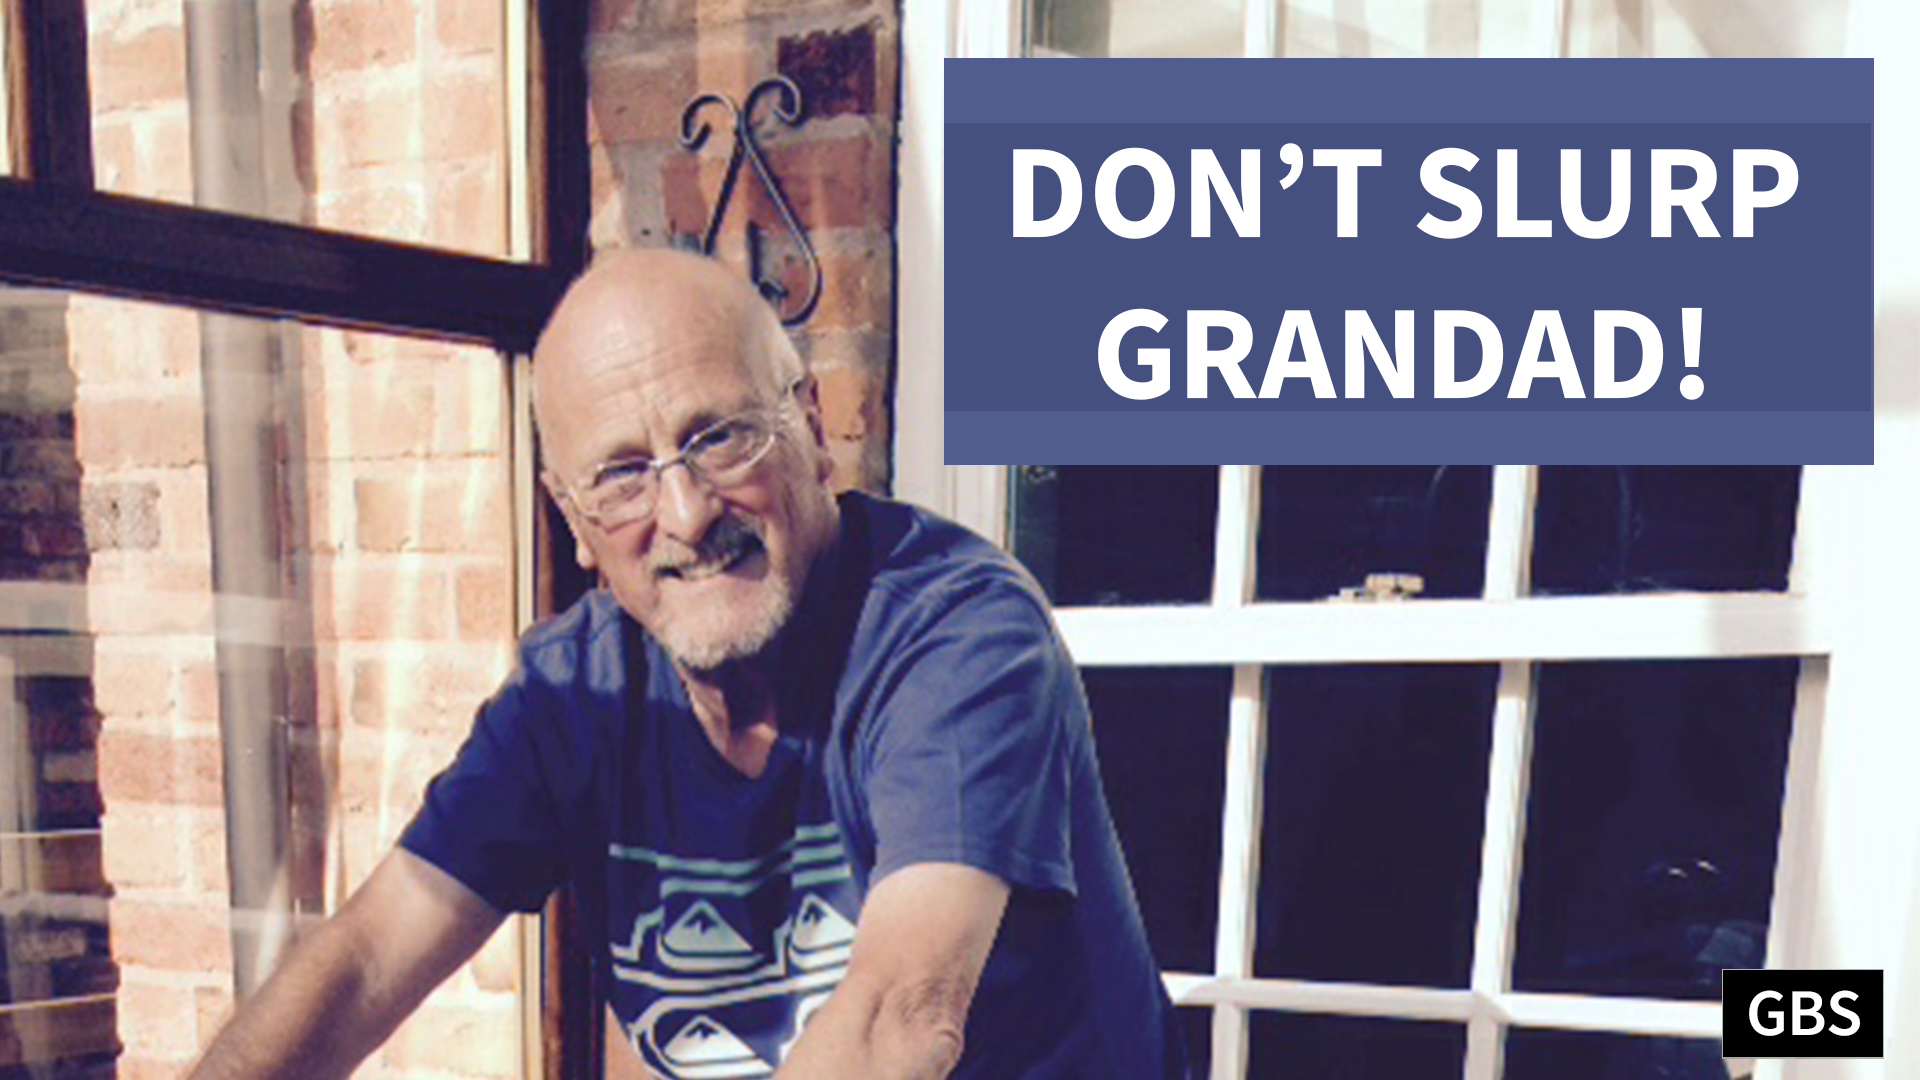 Don’t slurp Grandad!